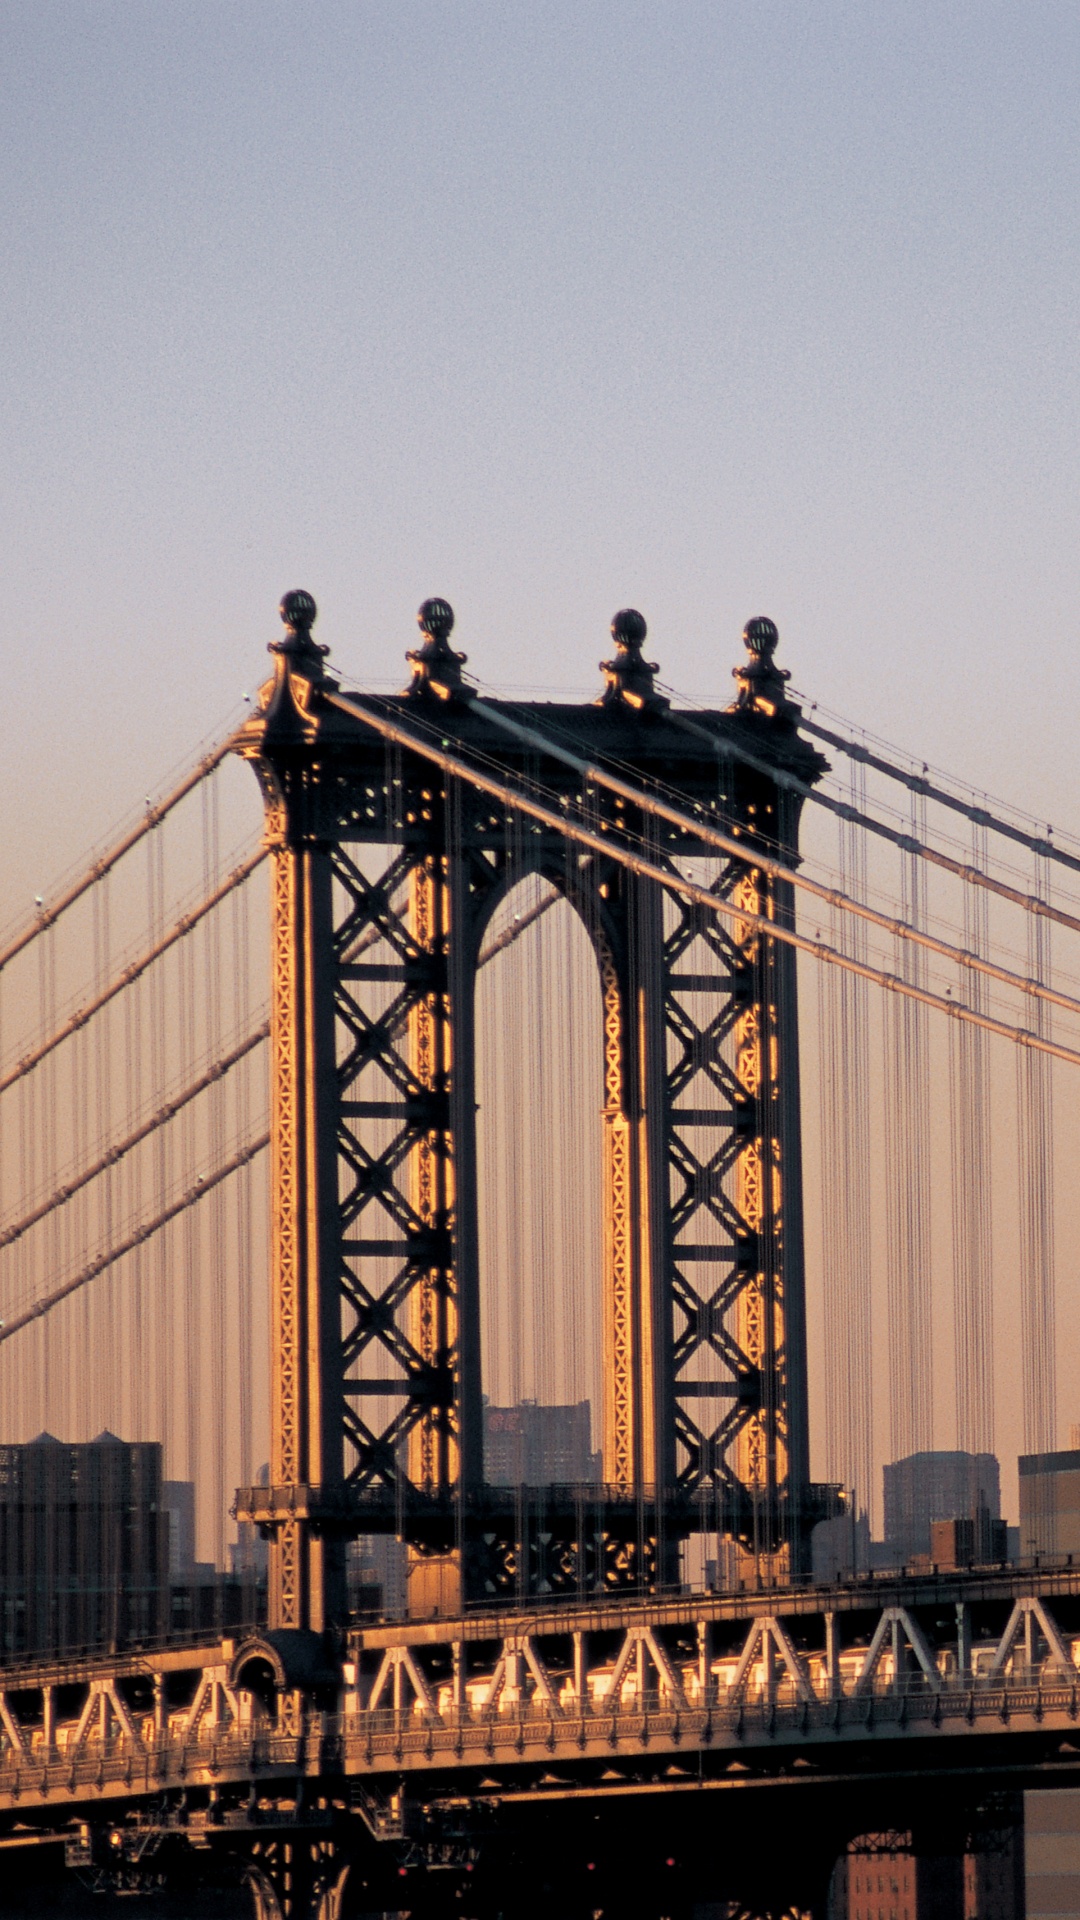 布鲁克林大桥, 曼哈顿大桥, 有线桥, 里程碑, 城市 壁纸 1080x1920 允许